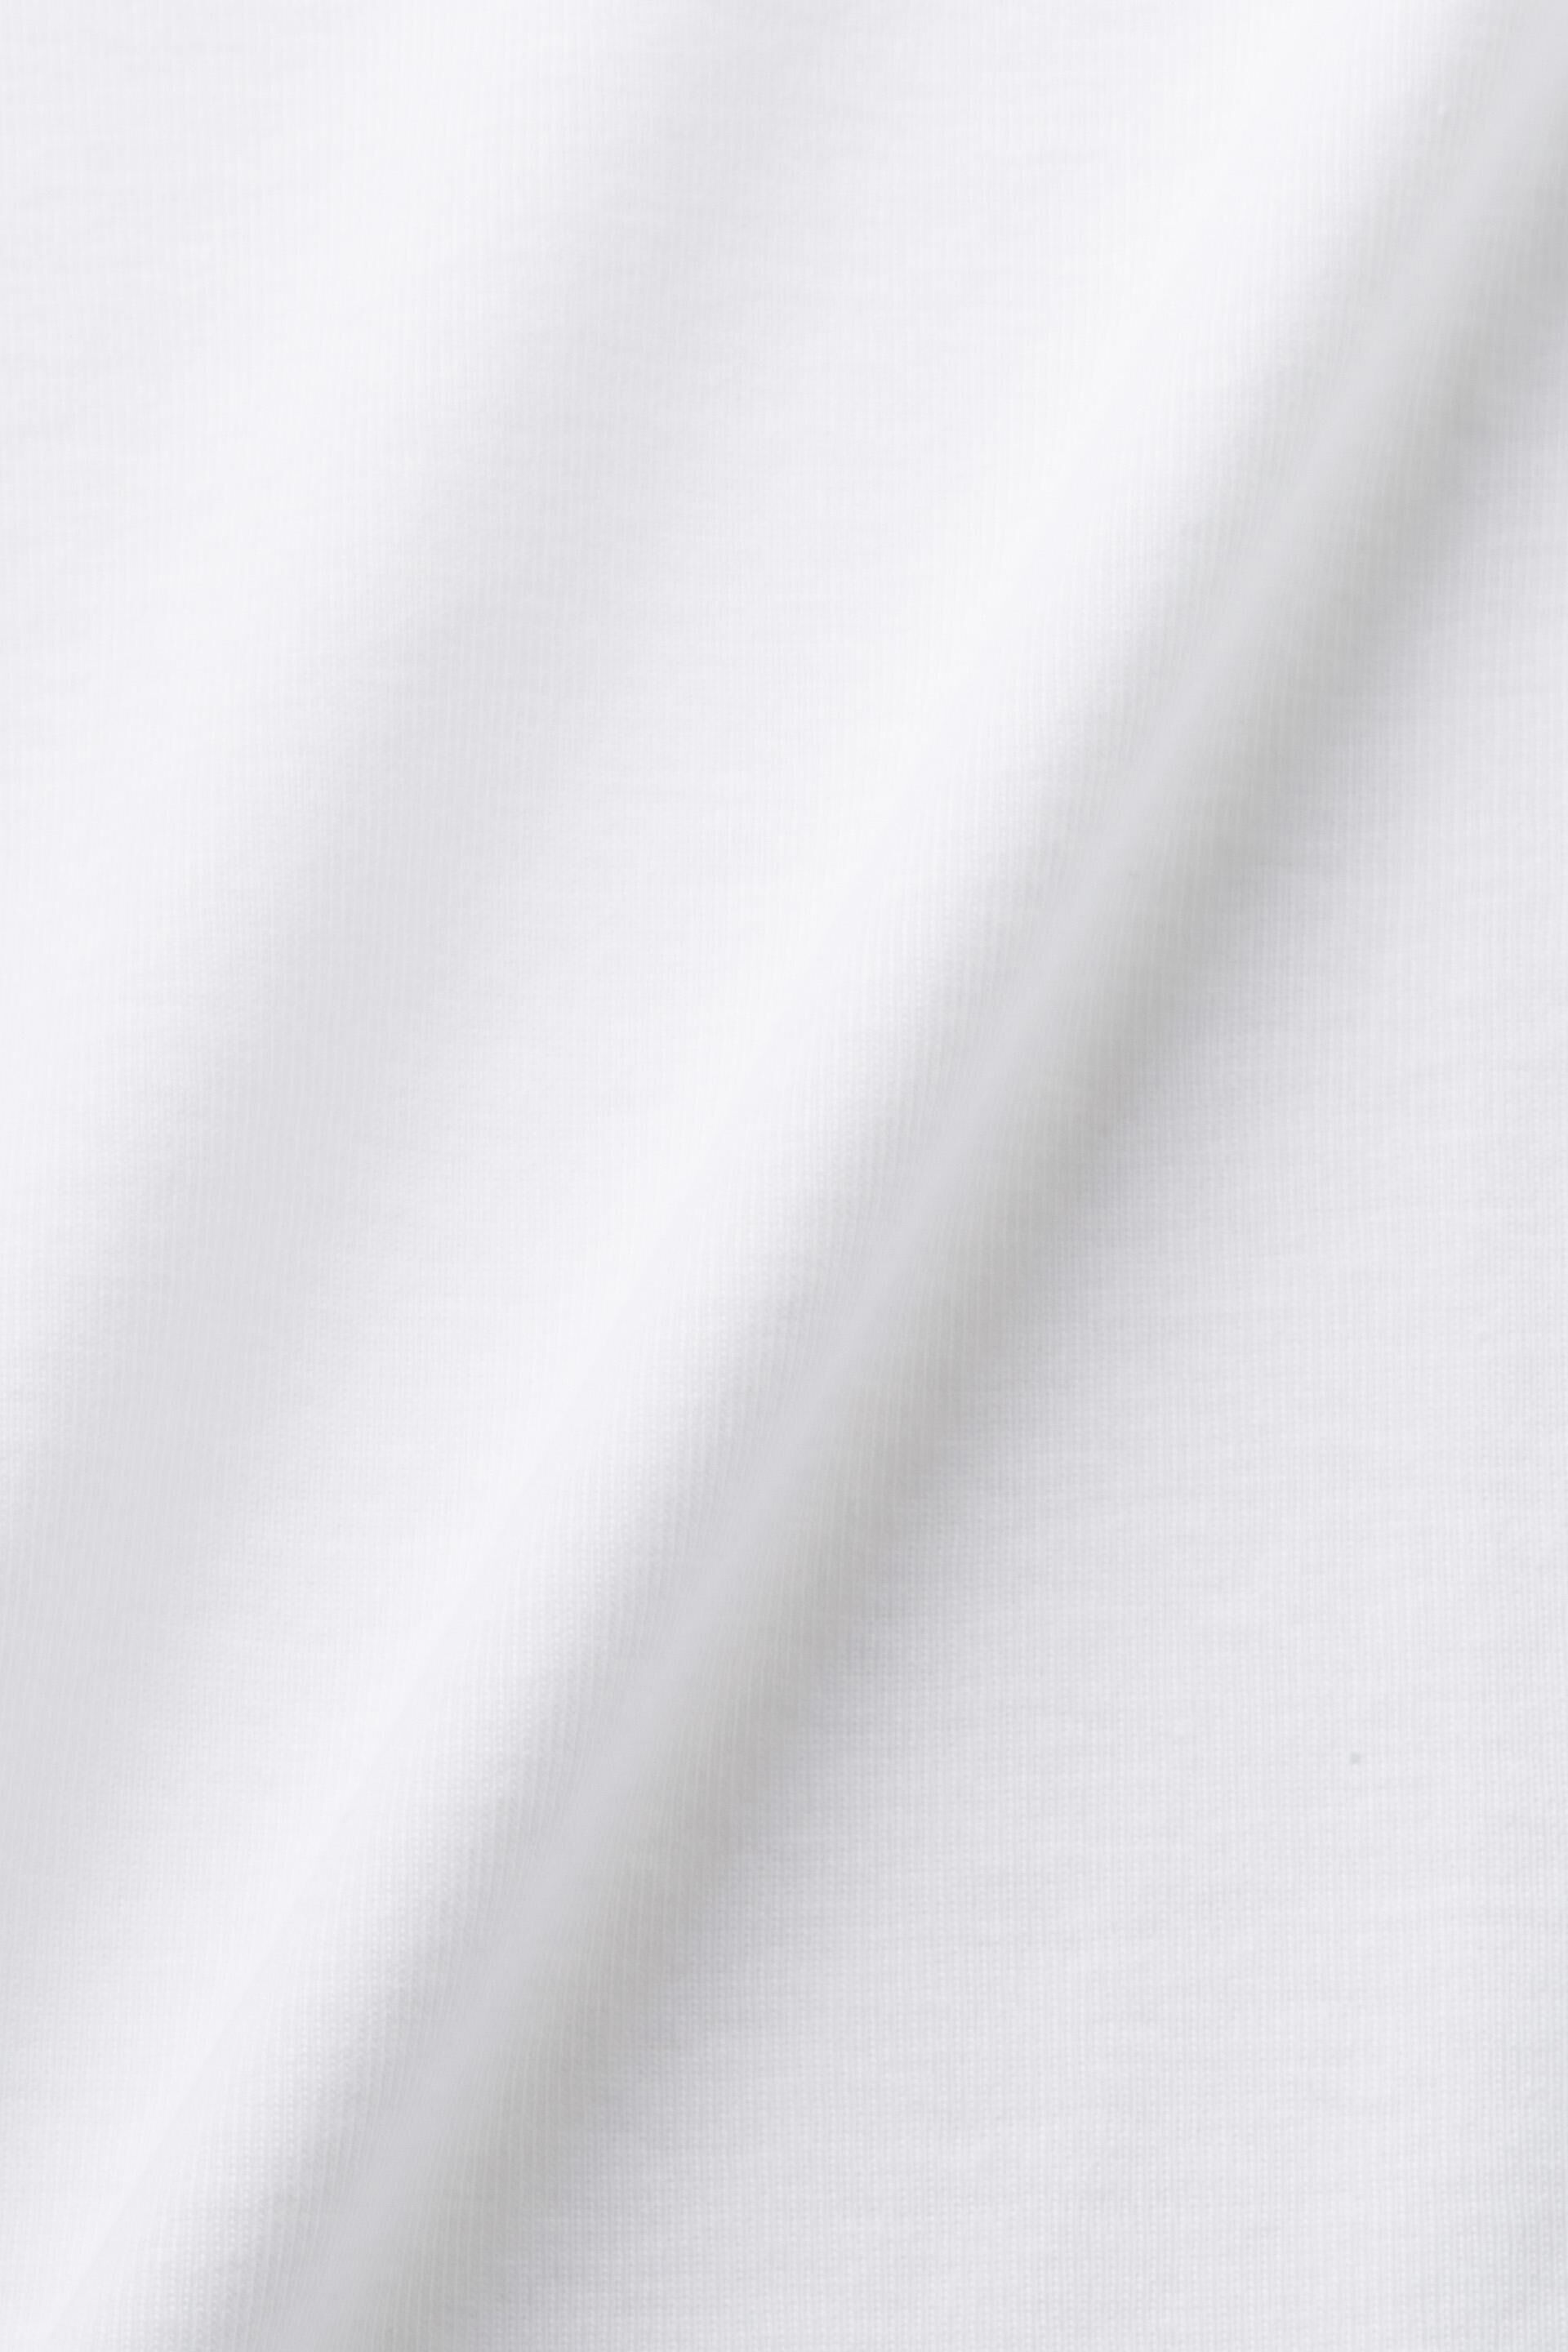 Esprit mit % 100 Baumwolle T-Shirt Rundhalsausschnitt,